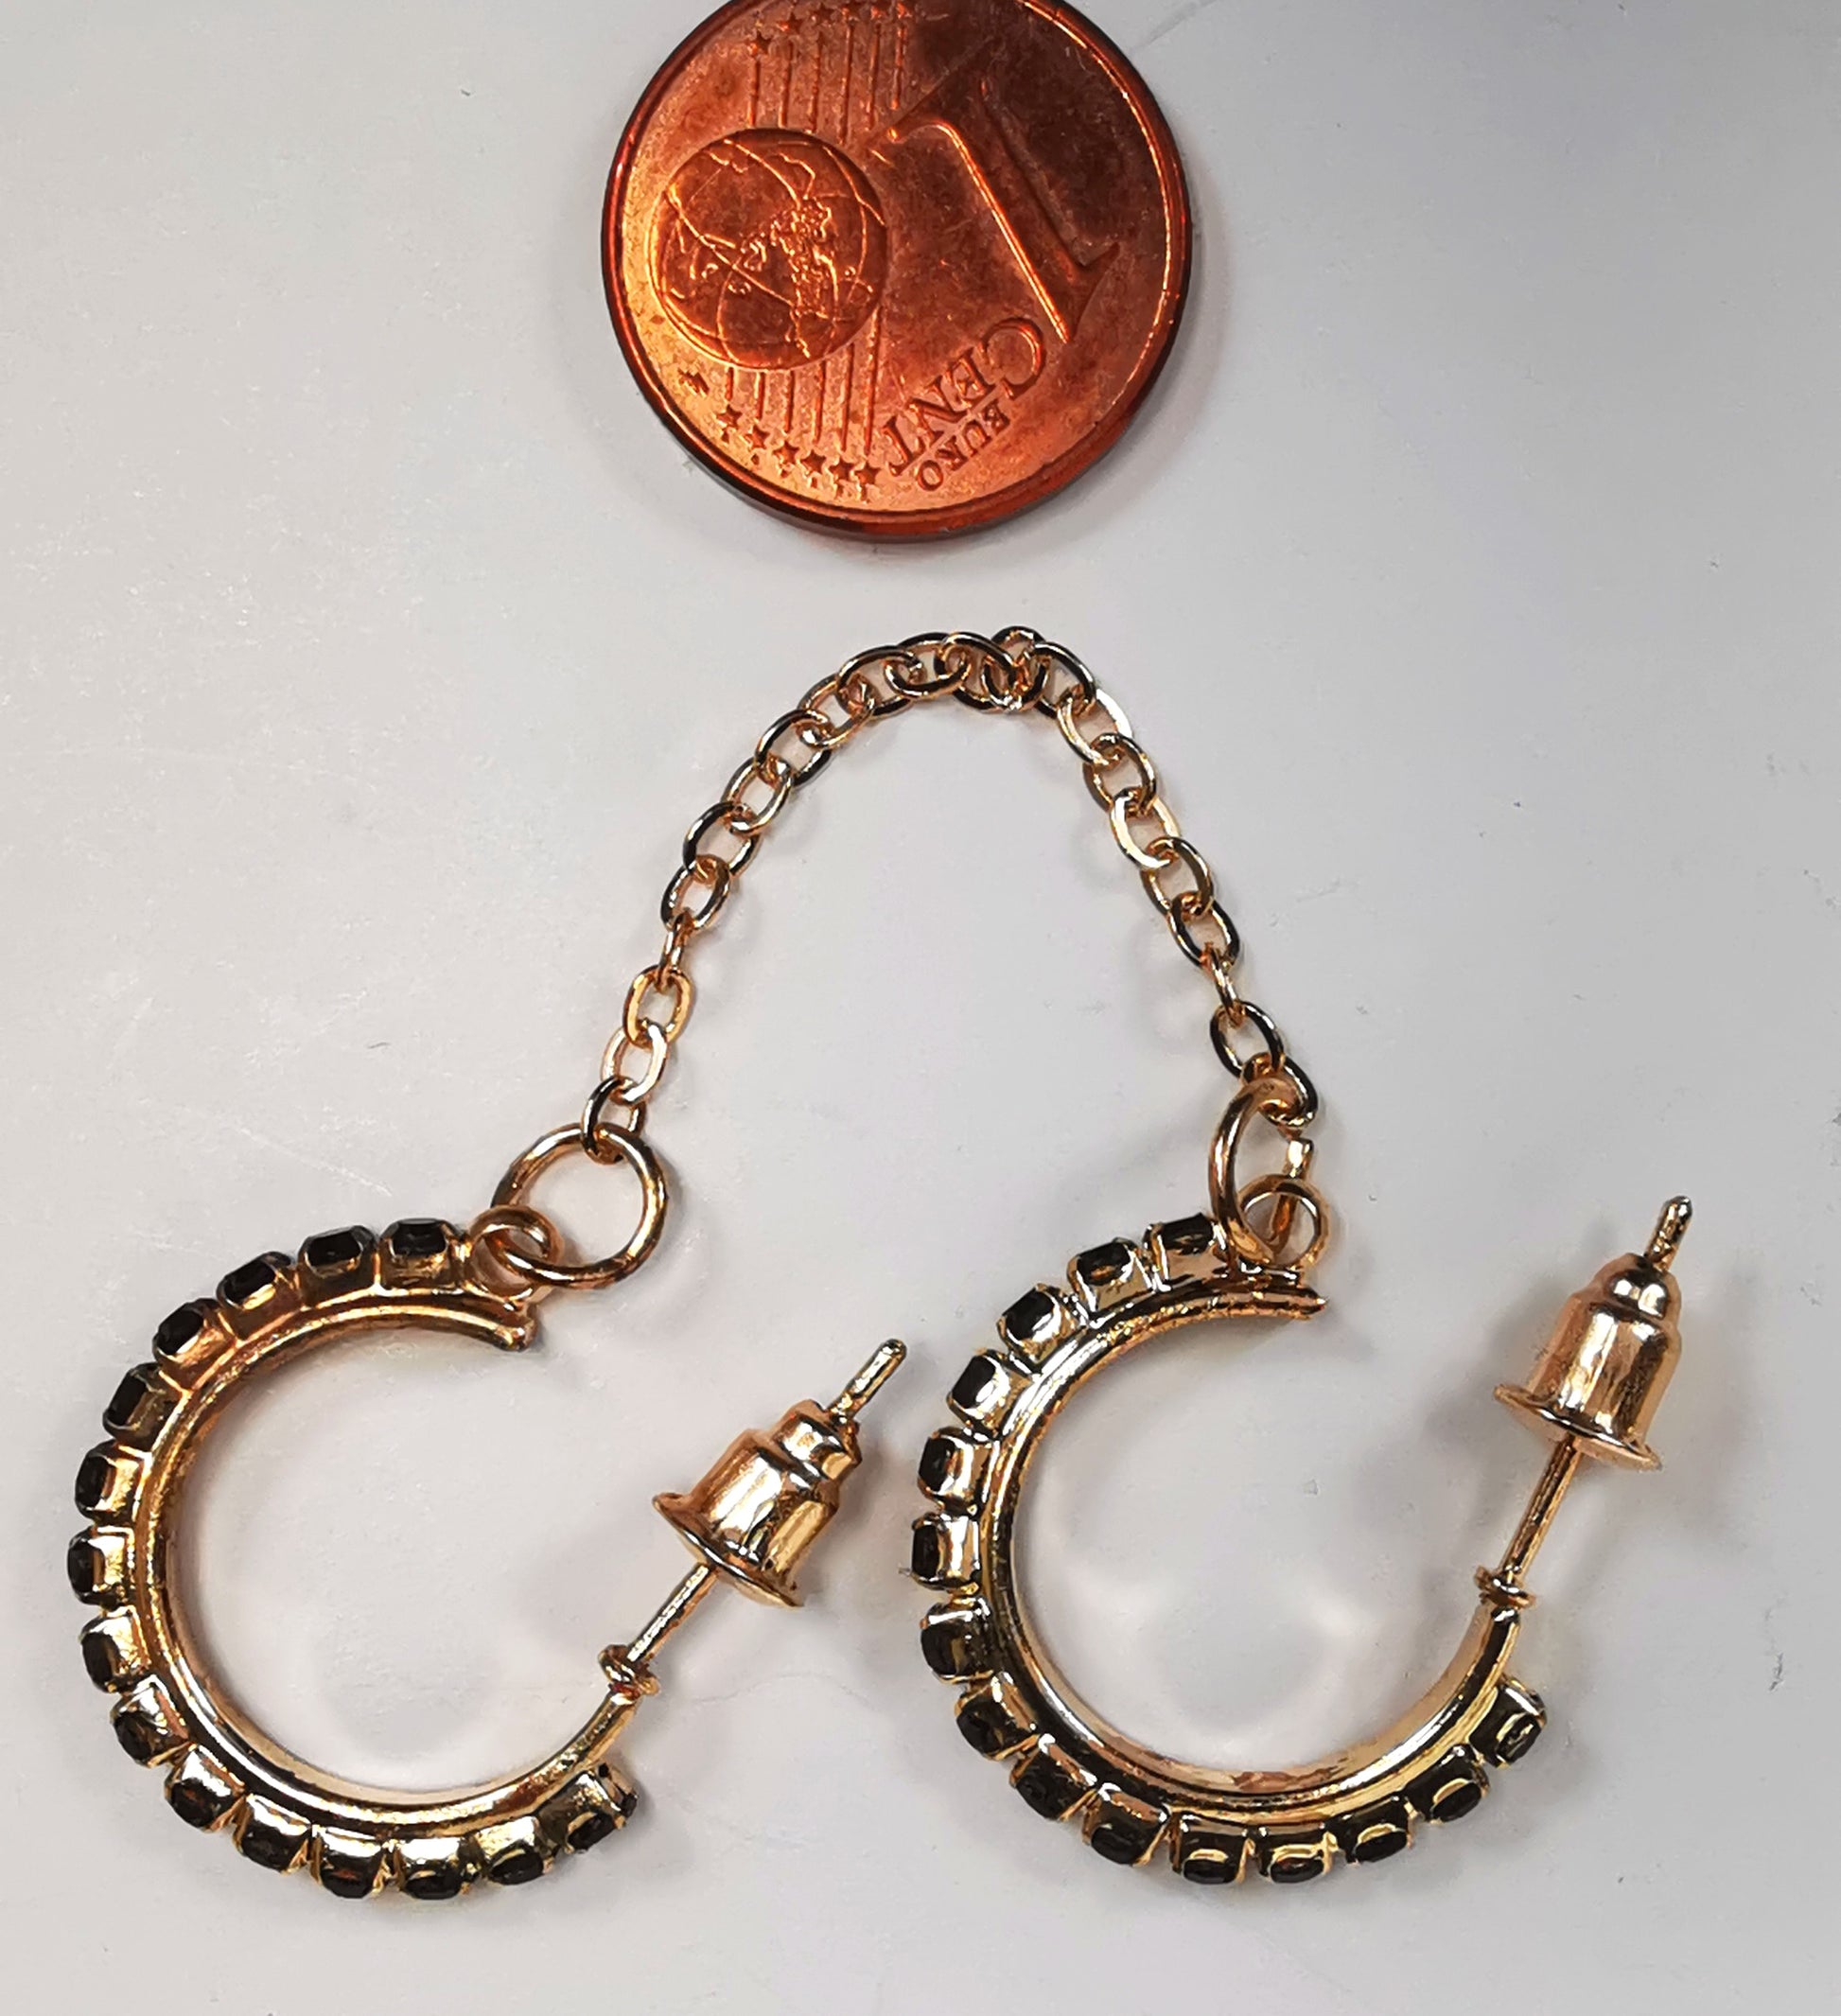 Boucles d'oreilles créoles fantaisie 20mm trois quarts de tour sur clous, posées l'une à coté de l'autre dans le même sens, avec une pièce de 1centime au dessus. Chacune est composée d'un anneau doré incrusté se strass noirs sur toute la périphérie. Les deux boucles sont liées par une chaîne dorée d'environ 35mm, se portent sur la même oreille